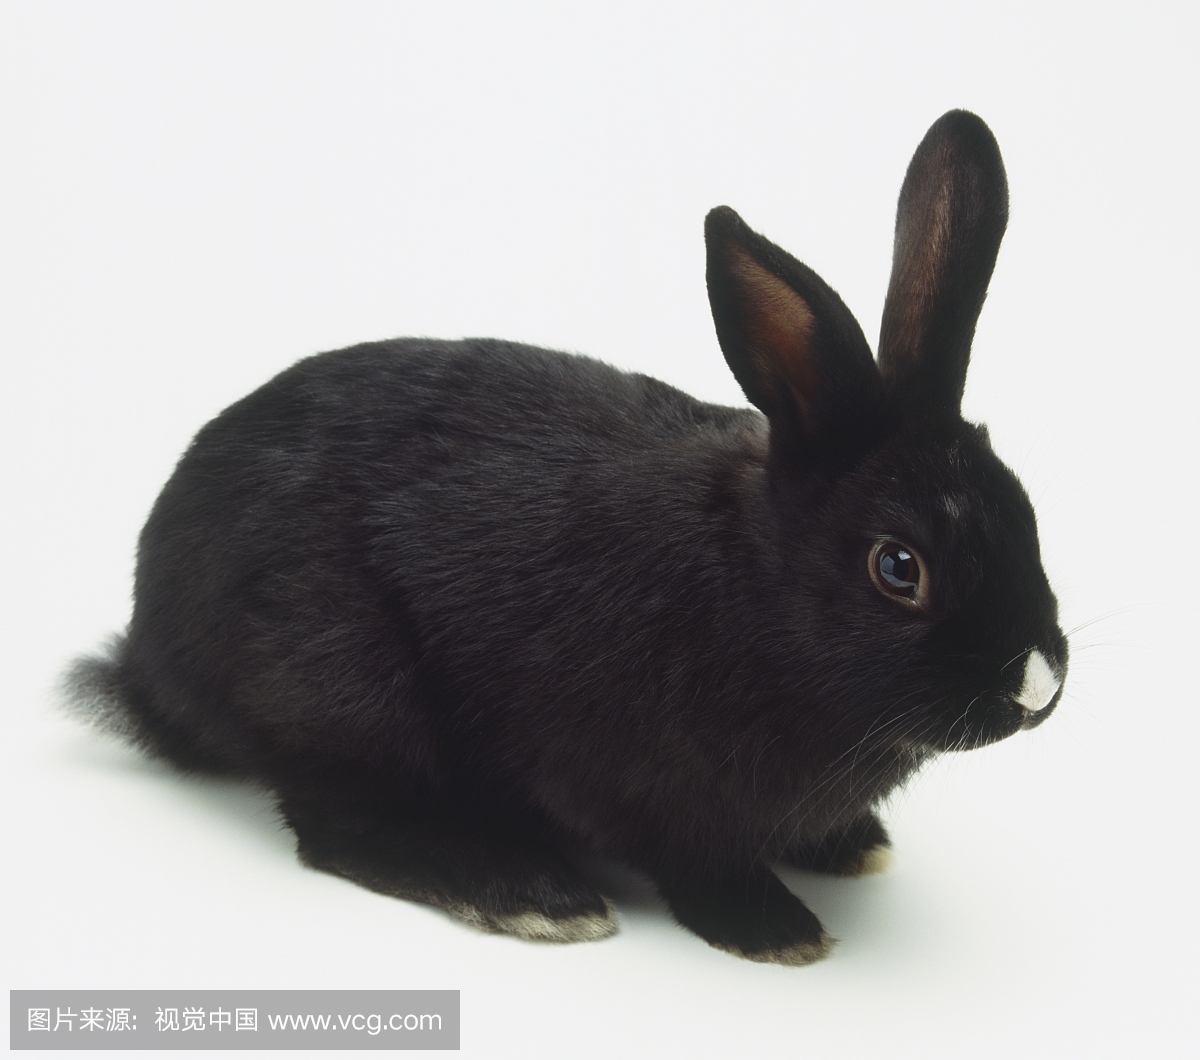 黑色家兔(Oryctolagus cuniculus)在其鼻子上有一个白点